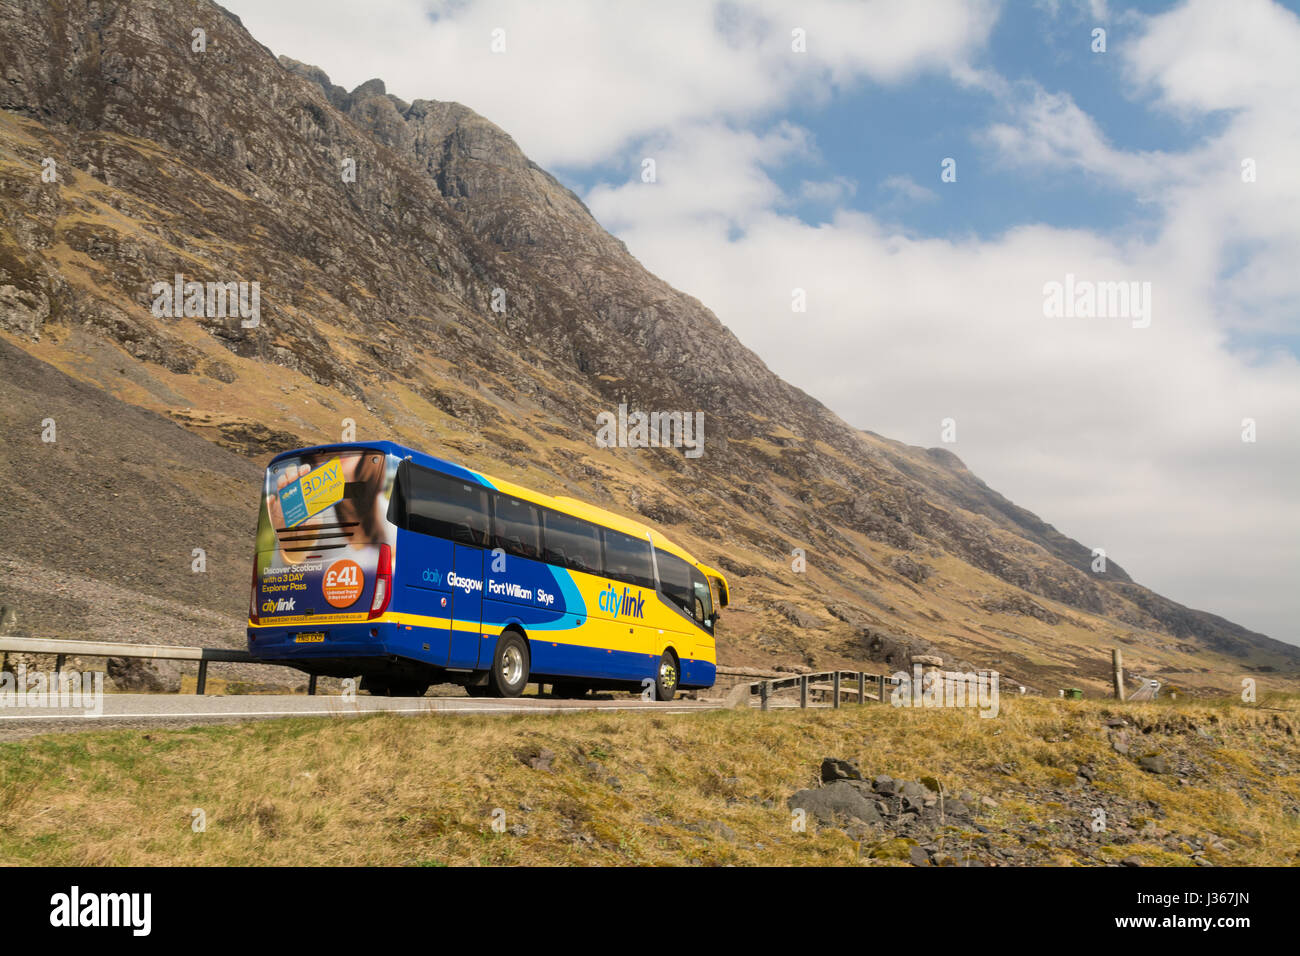 Citylink coach - Scottish Citylink voyageant à travers les Highlands écossais entre Skye et Glasgow, Écosse, Royaume-Uni Banque D'Images